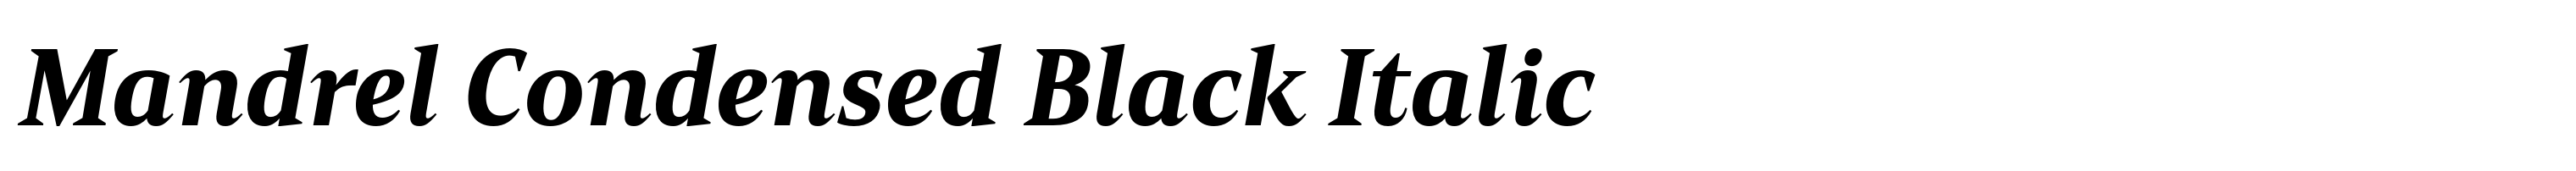 Mandrel Condensed Black Italic